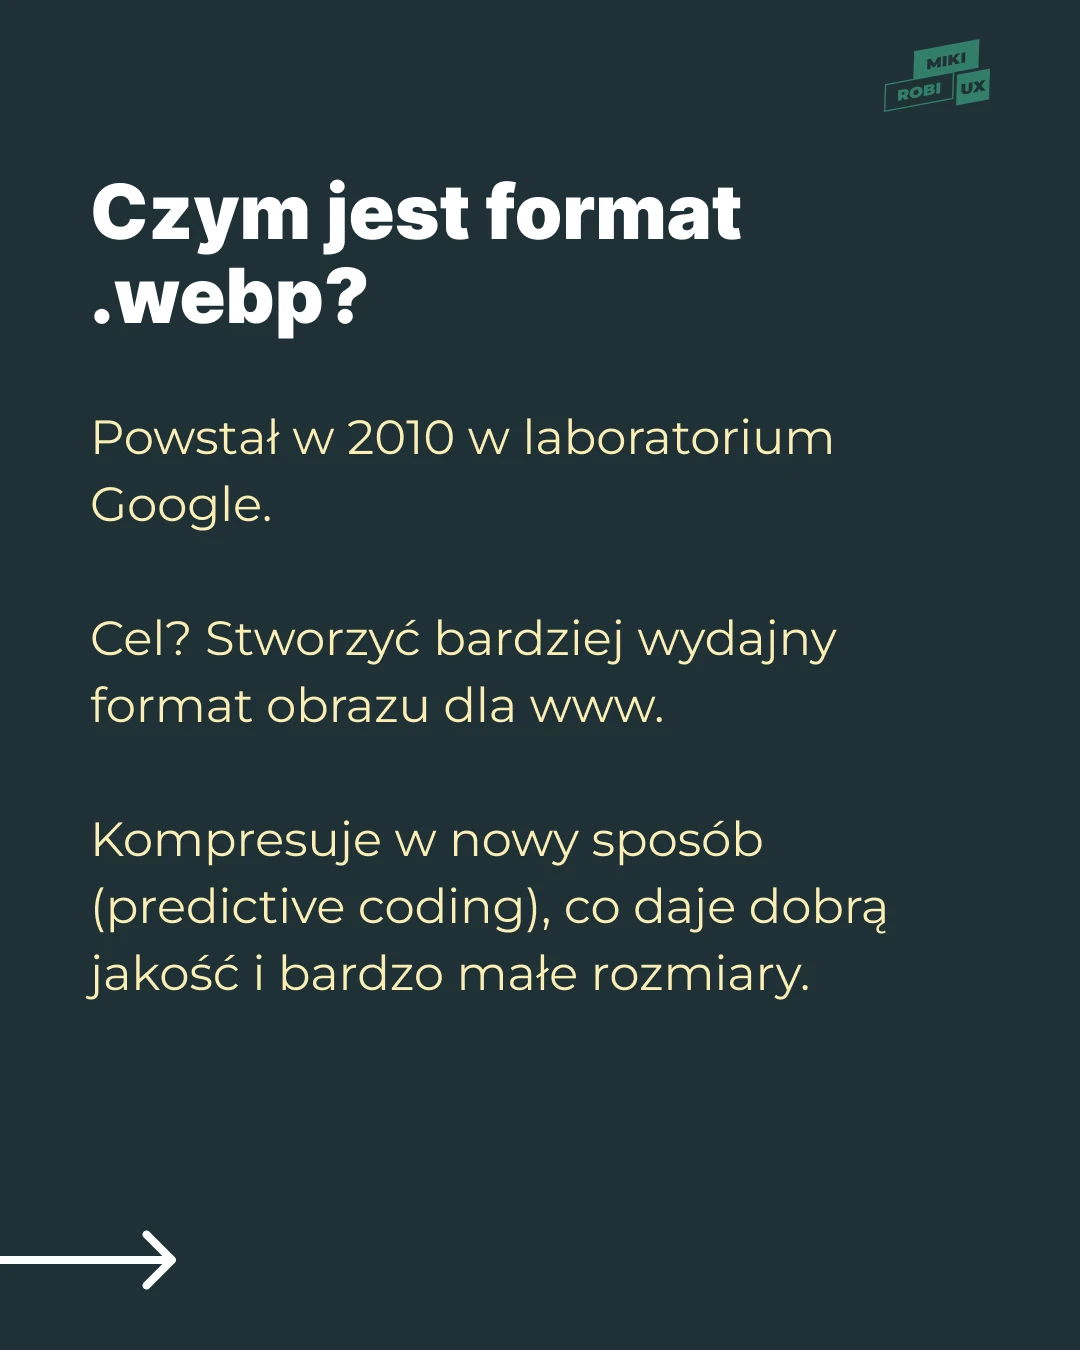 Kto stworzył webp?